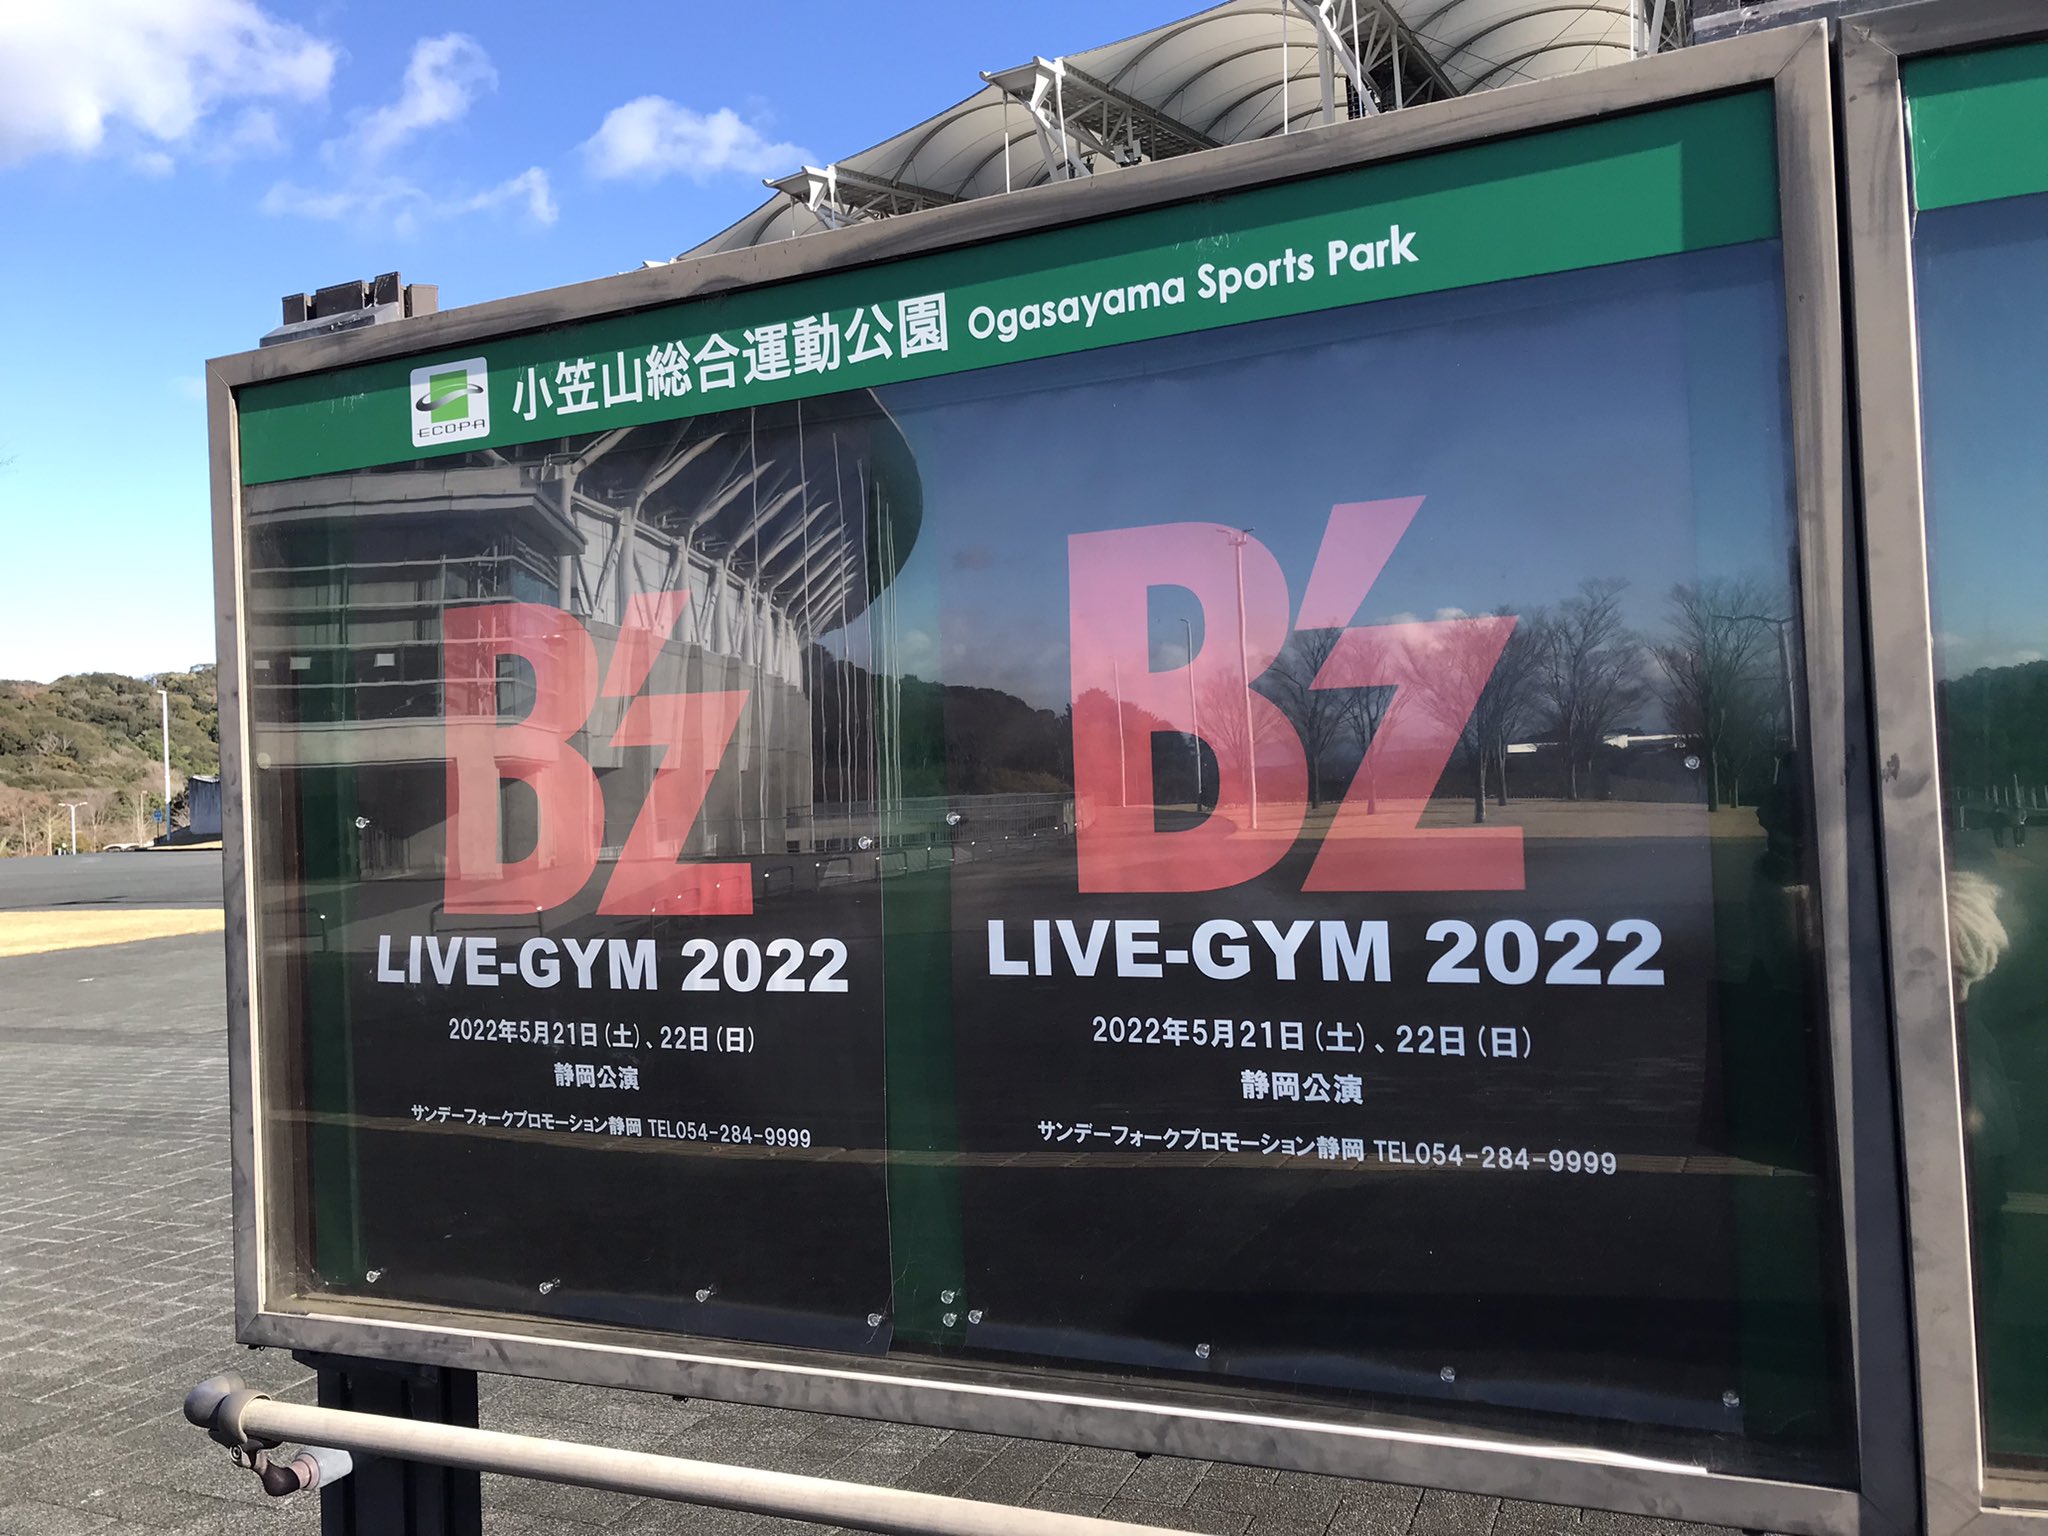 エコパアリーナなどがある小笠山総合運動公園に掲出された「B'z LIVE-GYM 2022」の告知ポスターの写真